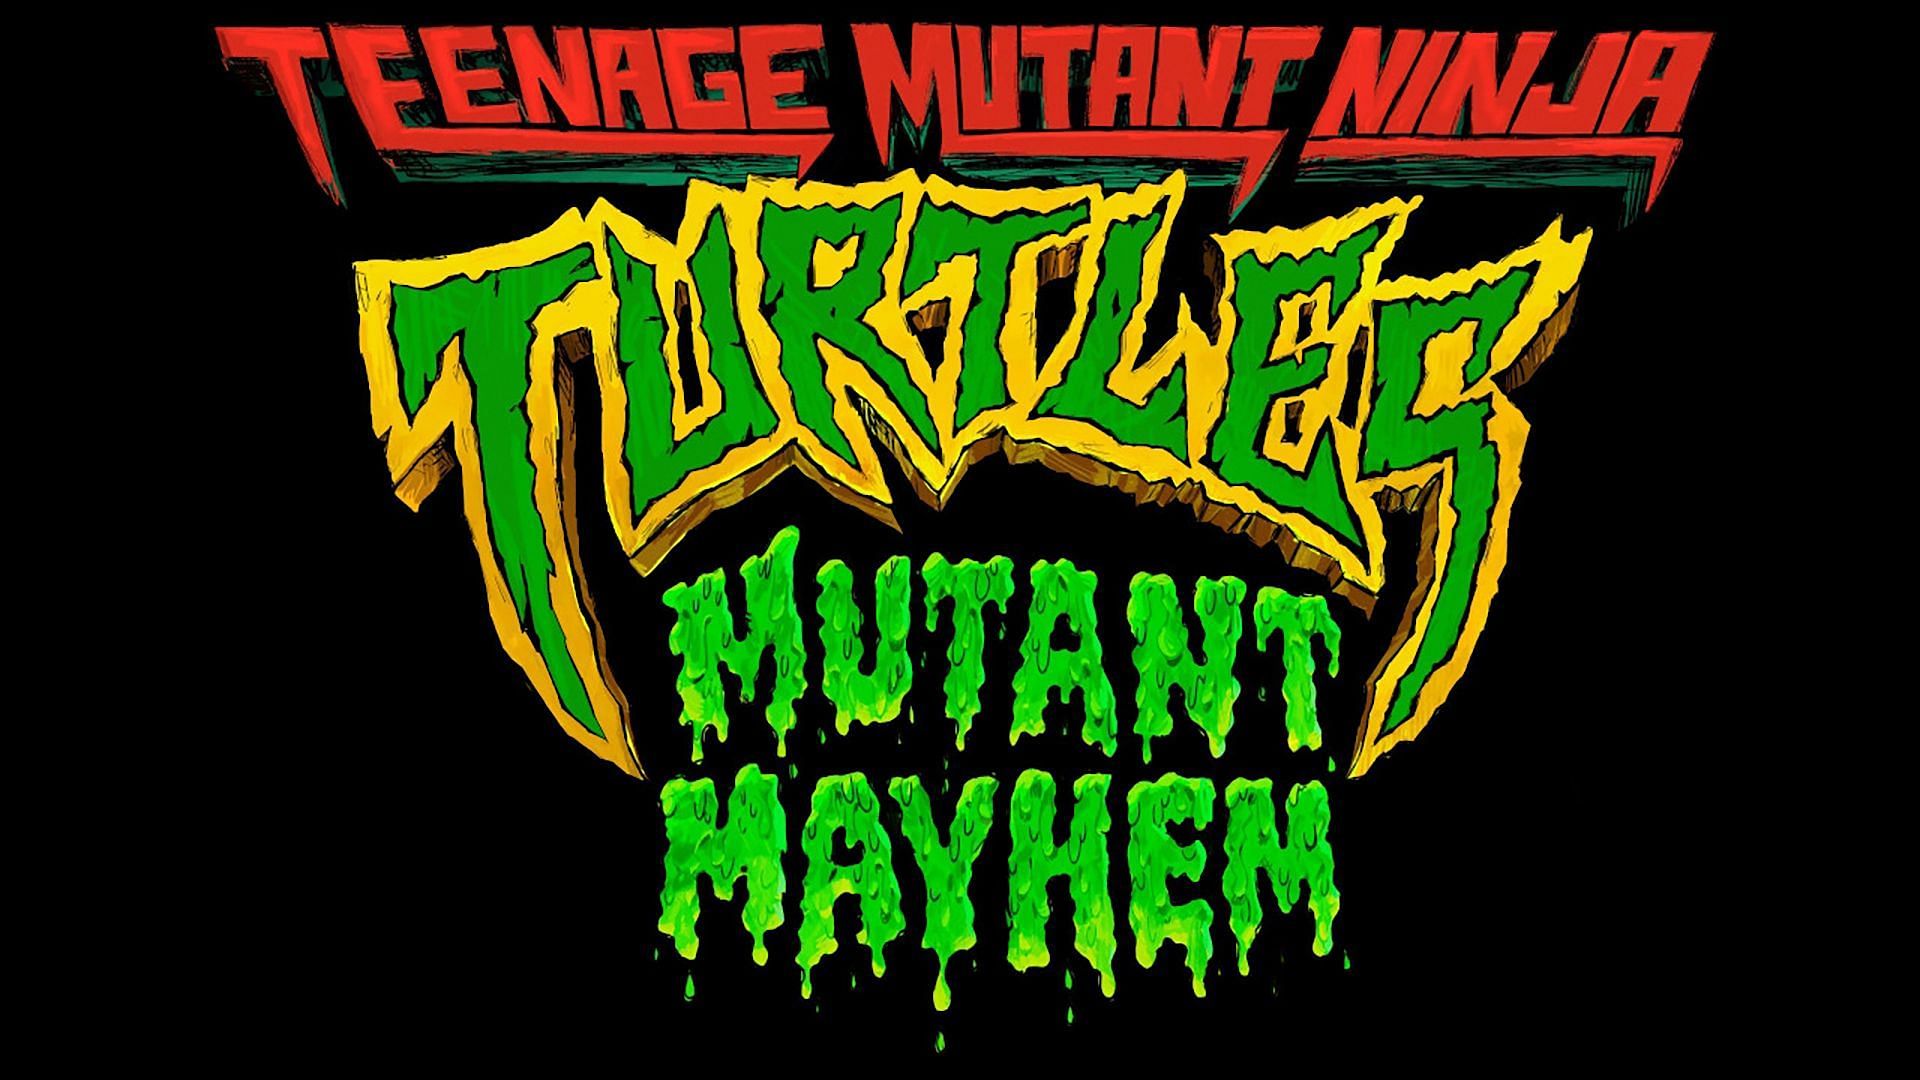 Teenage Mutant Ninja Turtles: Mutant Mayhem (Image via Paramount)